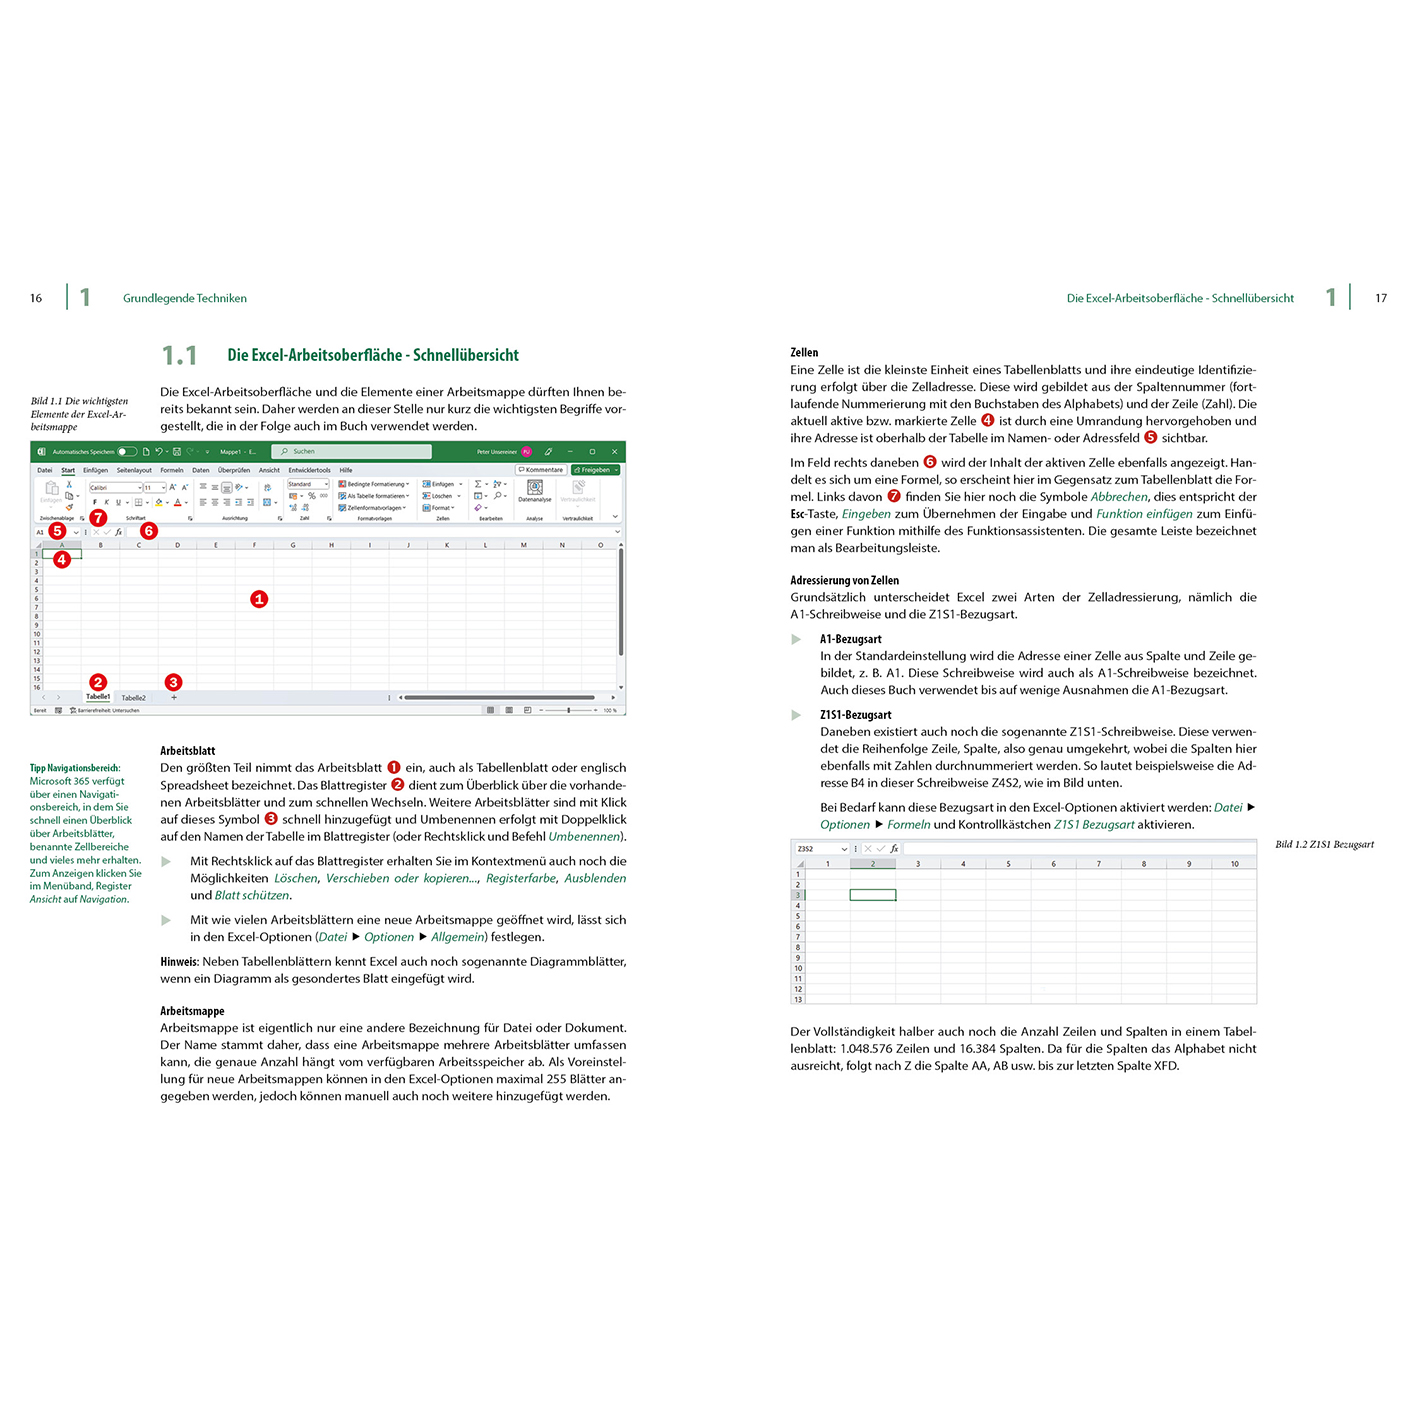 Excel Formeln & für Microsoft 365 und Excel Funktionen 2013-2021